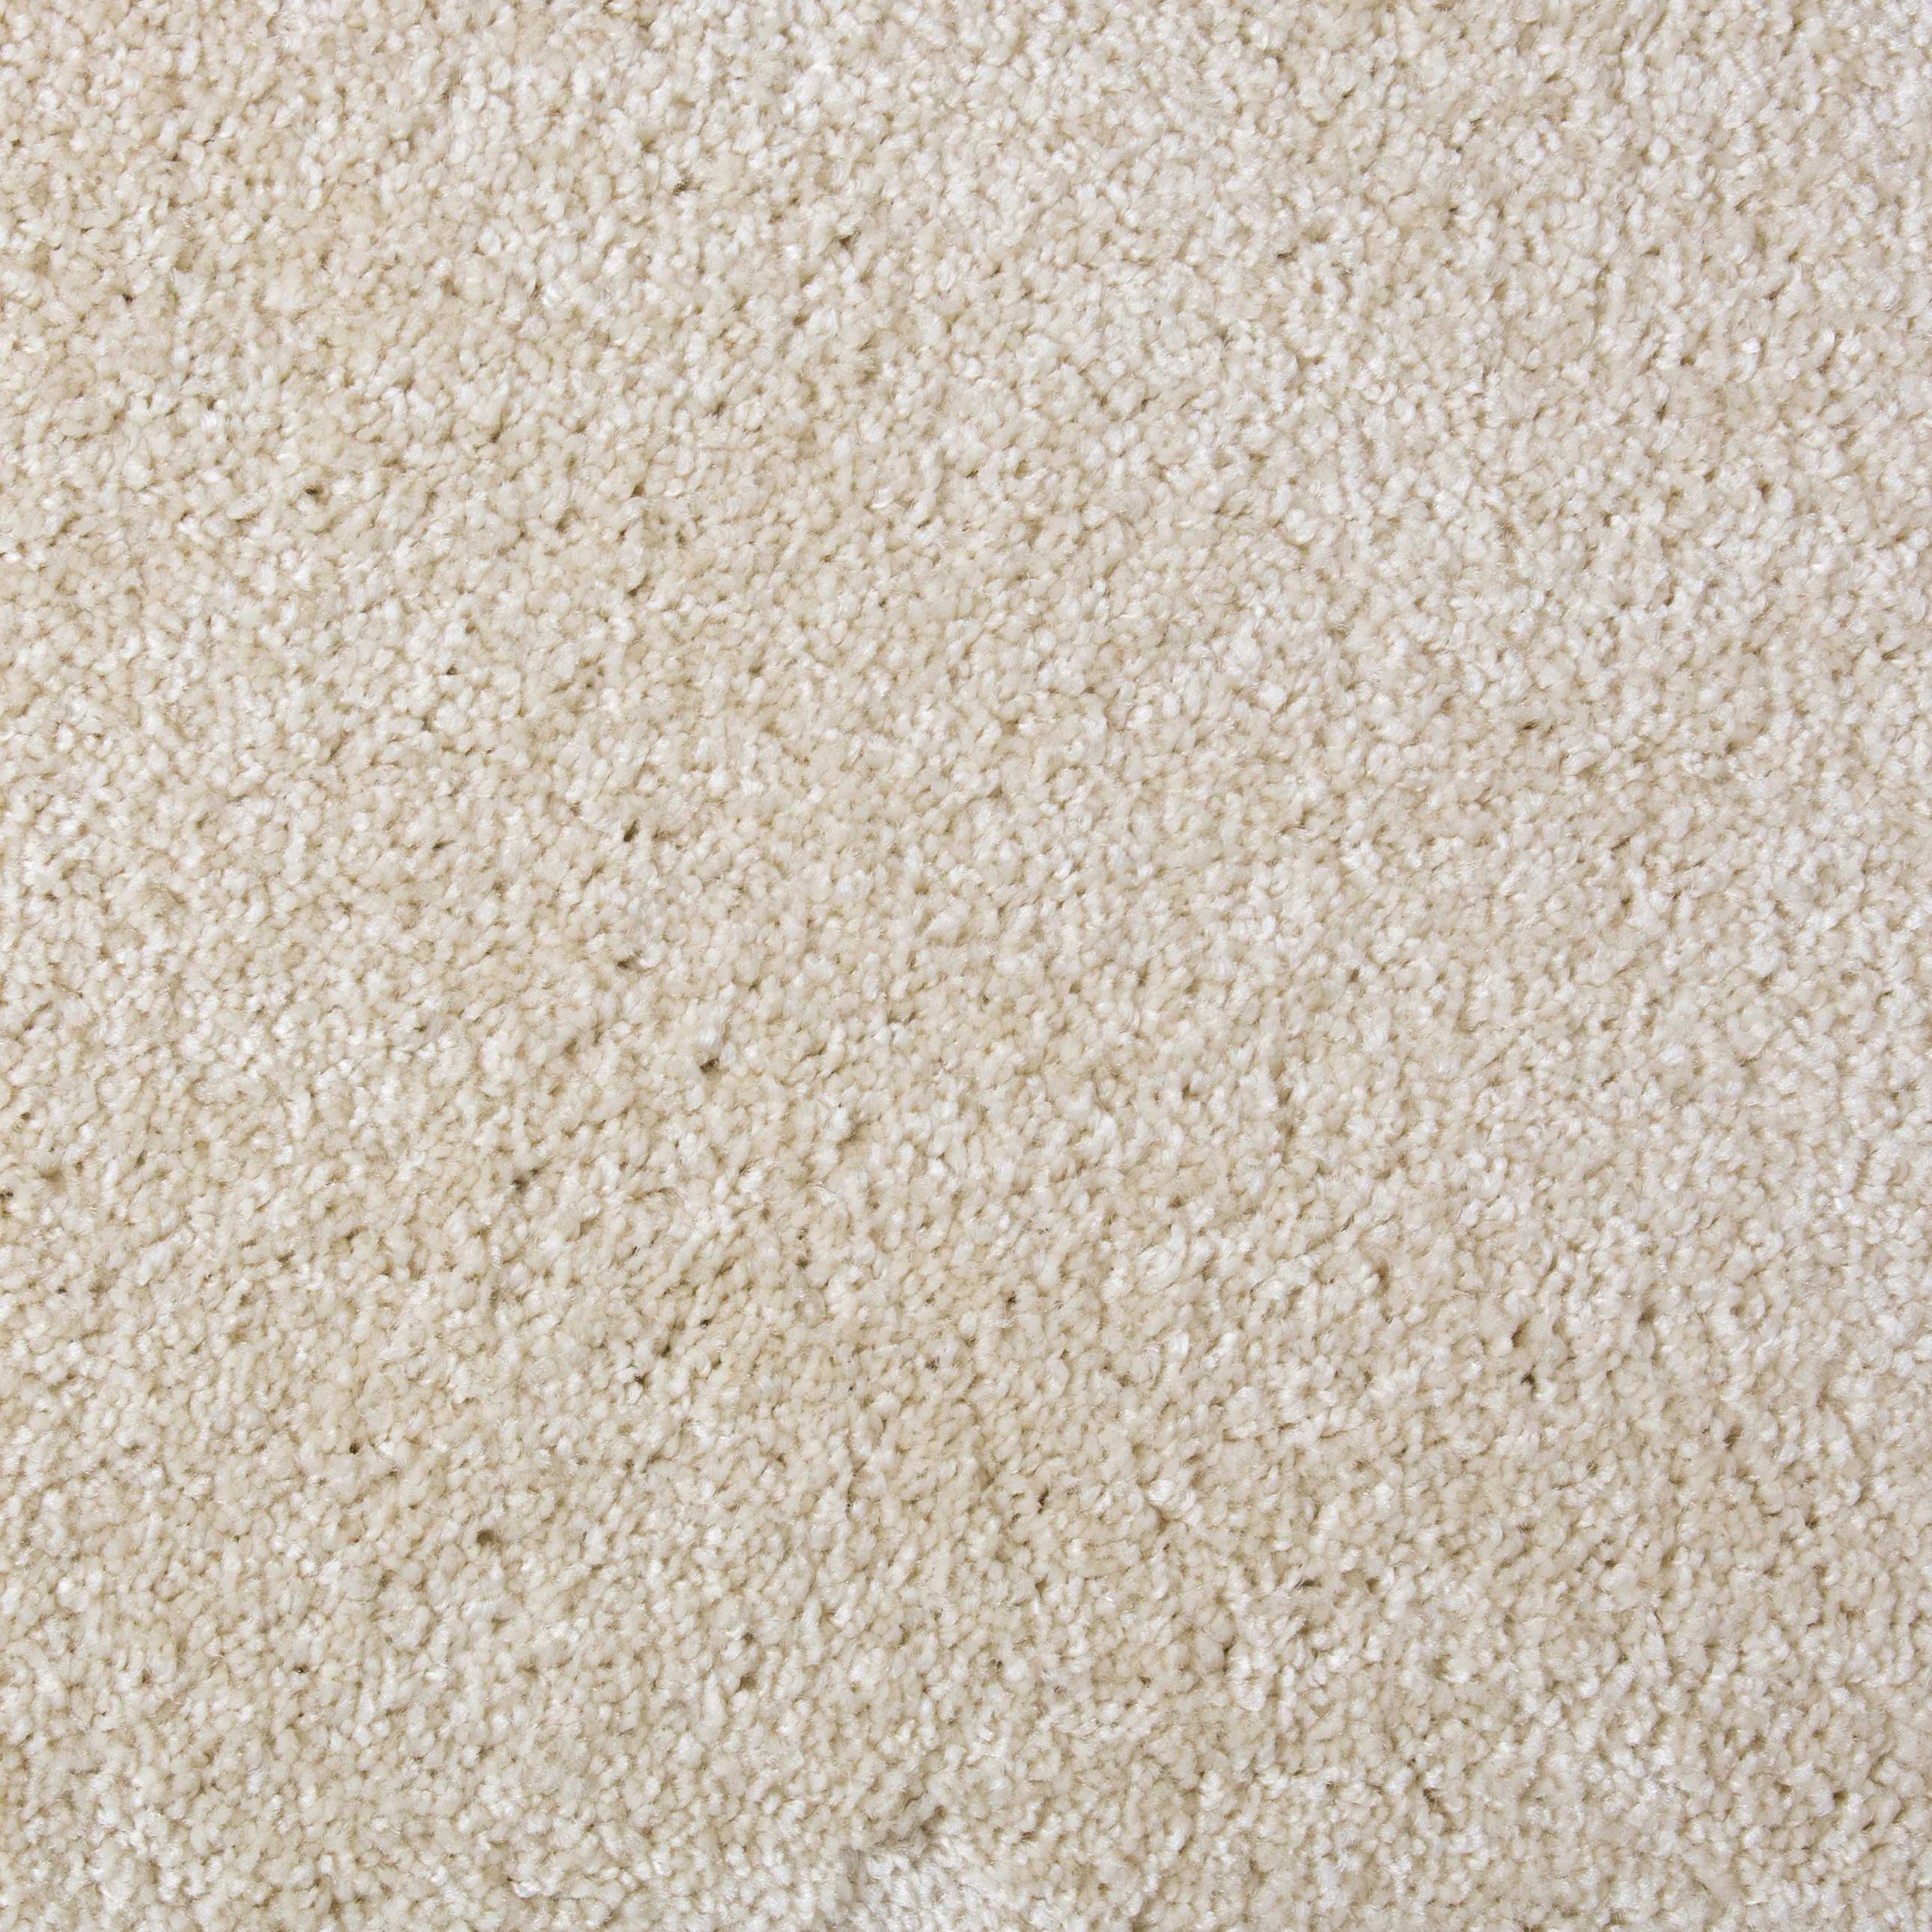 Teppichboden Rom Weiß Meterware 400 cm breit kaufen bei OBI